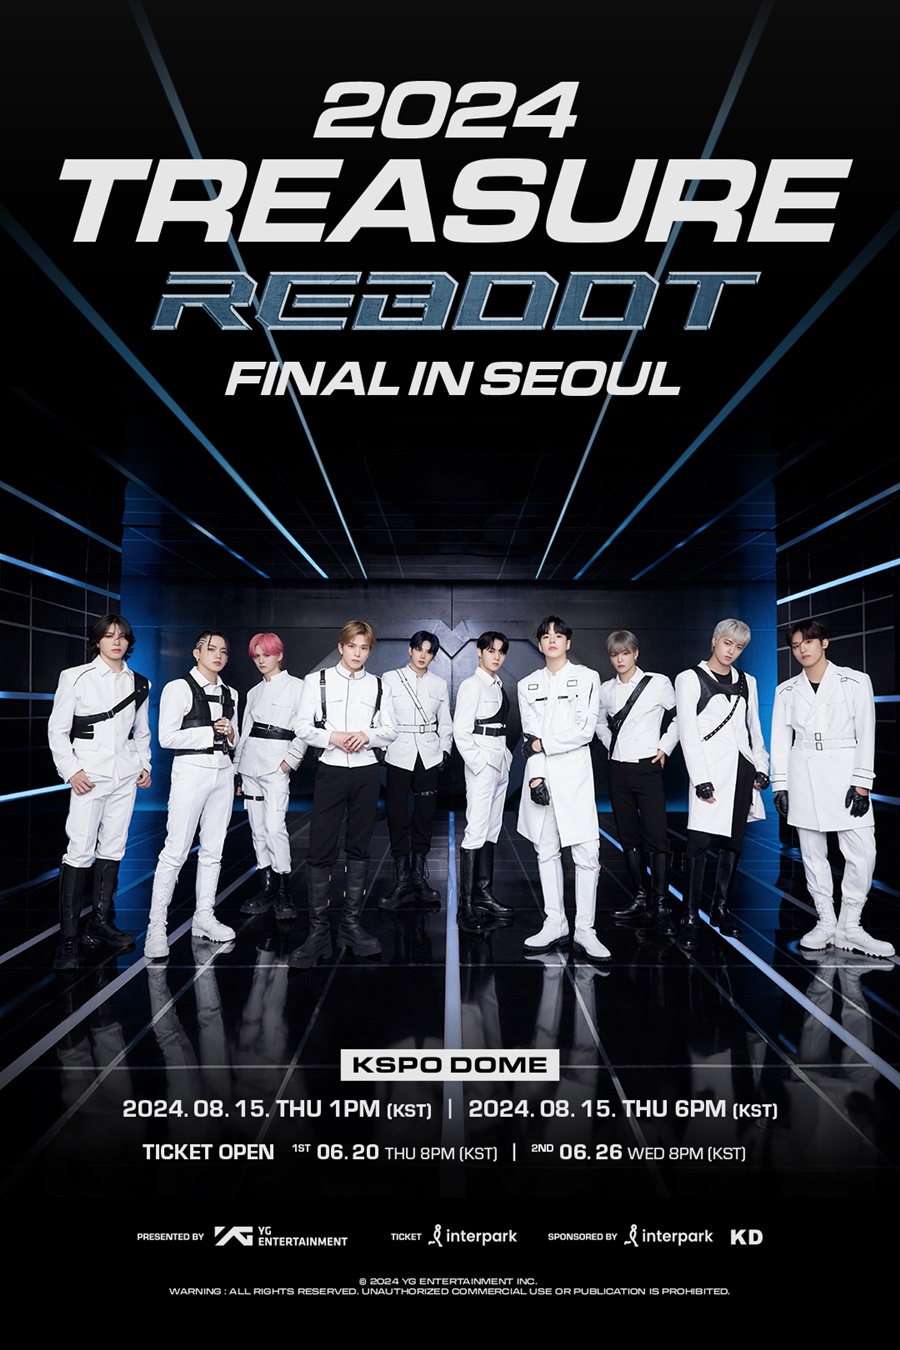 트레저, 서울 앙코르 콘서트로 亞 투어 피날레…8월 15일 2회차 공연 개최